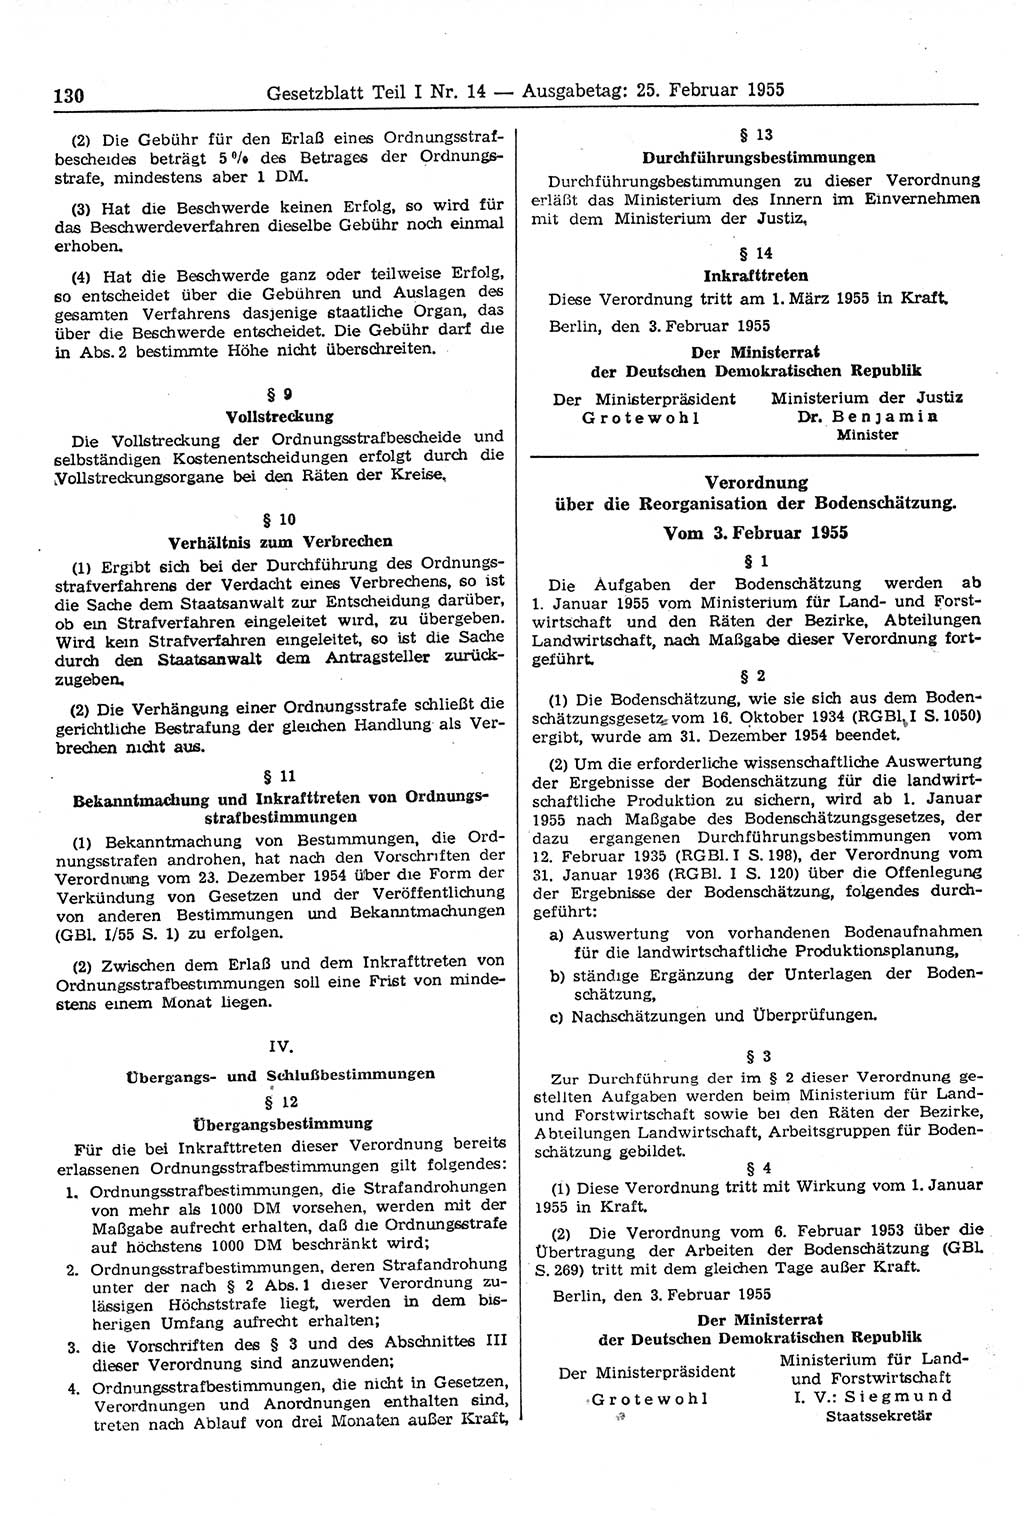 Gesetzblatt (GBl.) der Deutschen Demokratischen Republik (DDR) Teil Ⅰ 1955, Seite 130 (GBl. DDR Ⅰ 1955, S. 130)